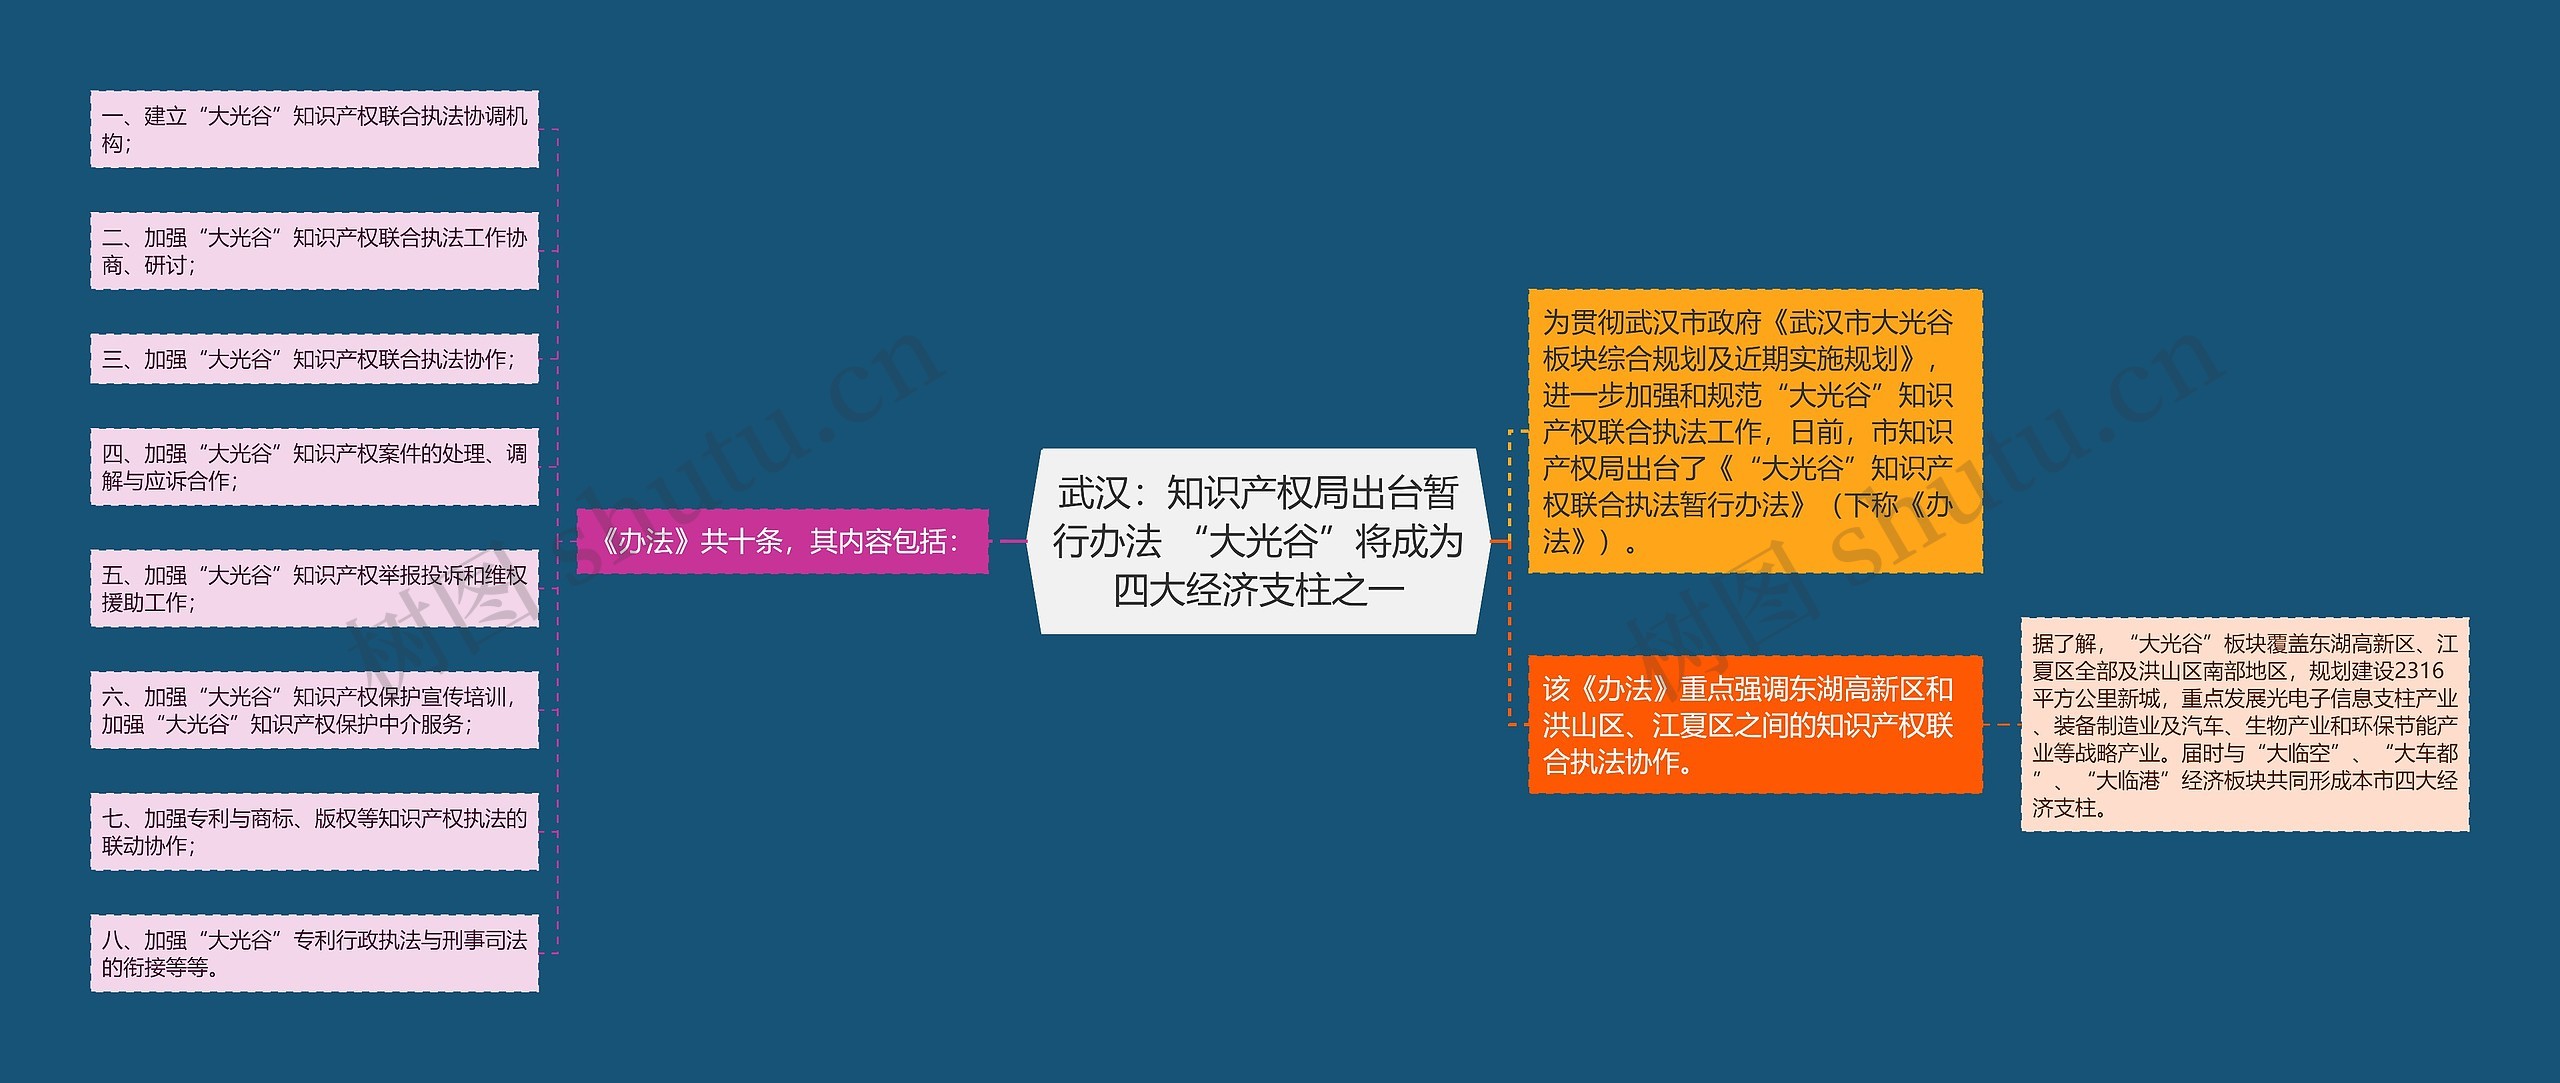 武汉：知识产权局出台暂行办法 “大光谷”将成为四大经济支柱之一思维导图